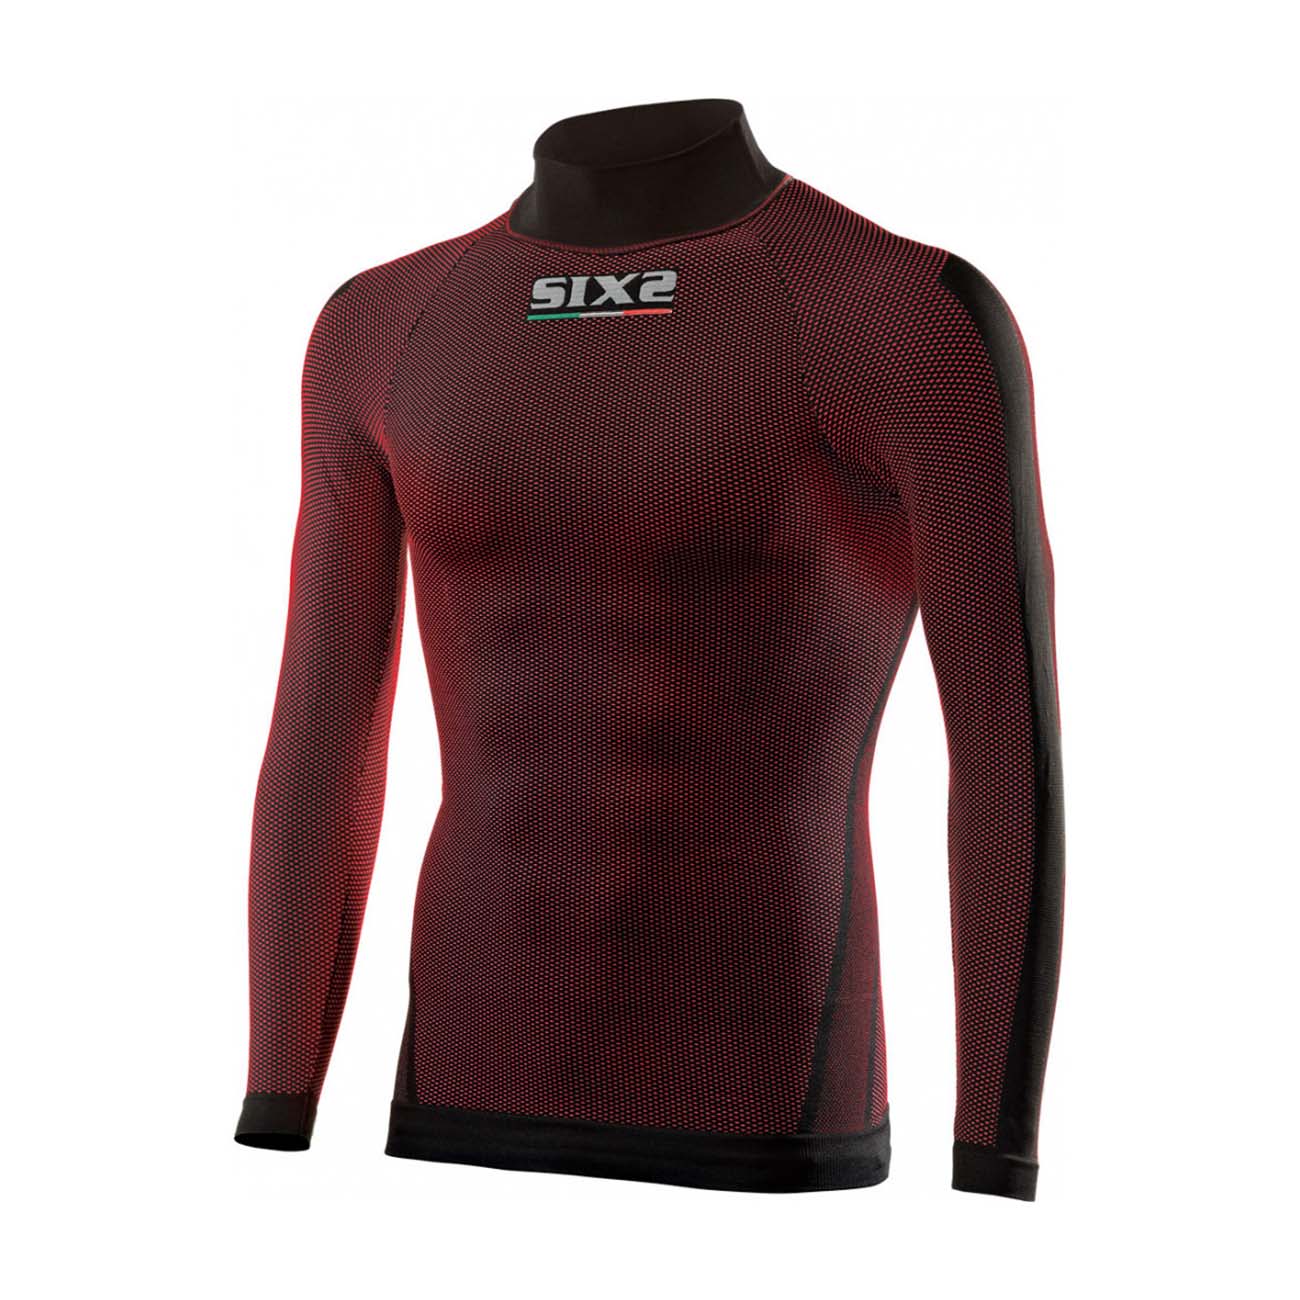 
                SIX2 Cyklistické tričko s dlhým rukávom - TS2 II - bordová/červená 3XL-4XL
            